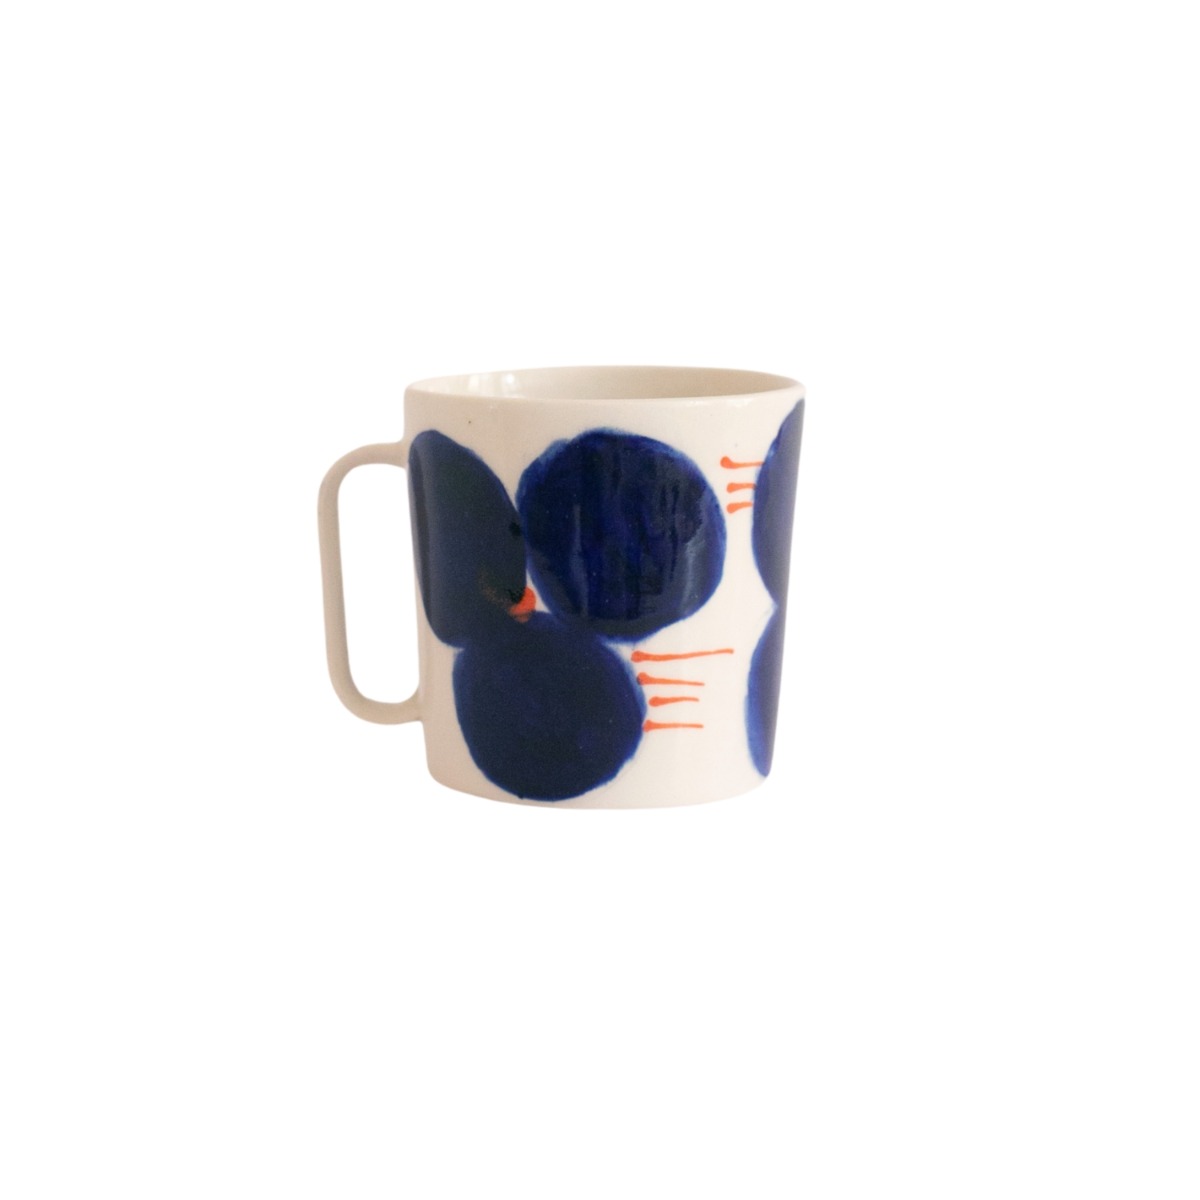 Kaffekopp 25 ml blom blå/orange streckproduktzoombild #1